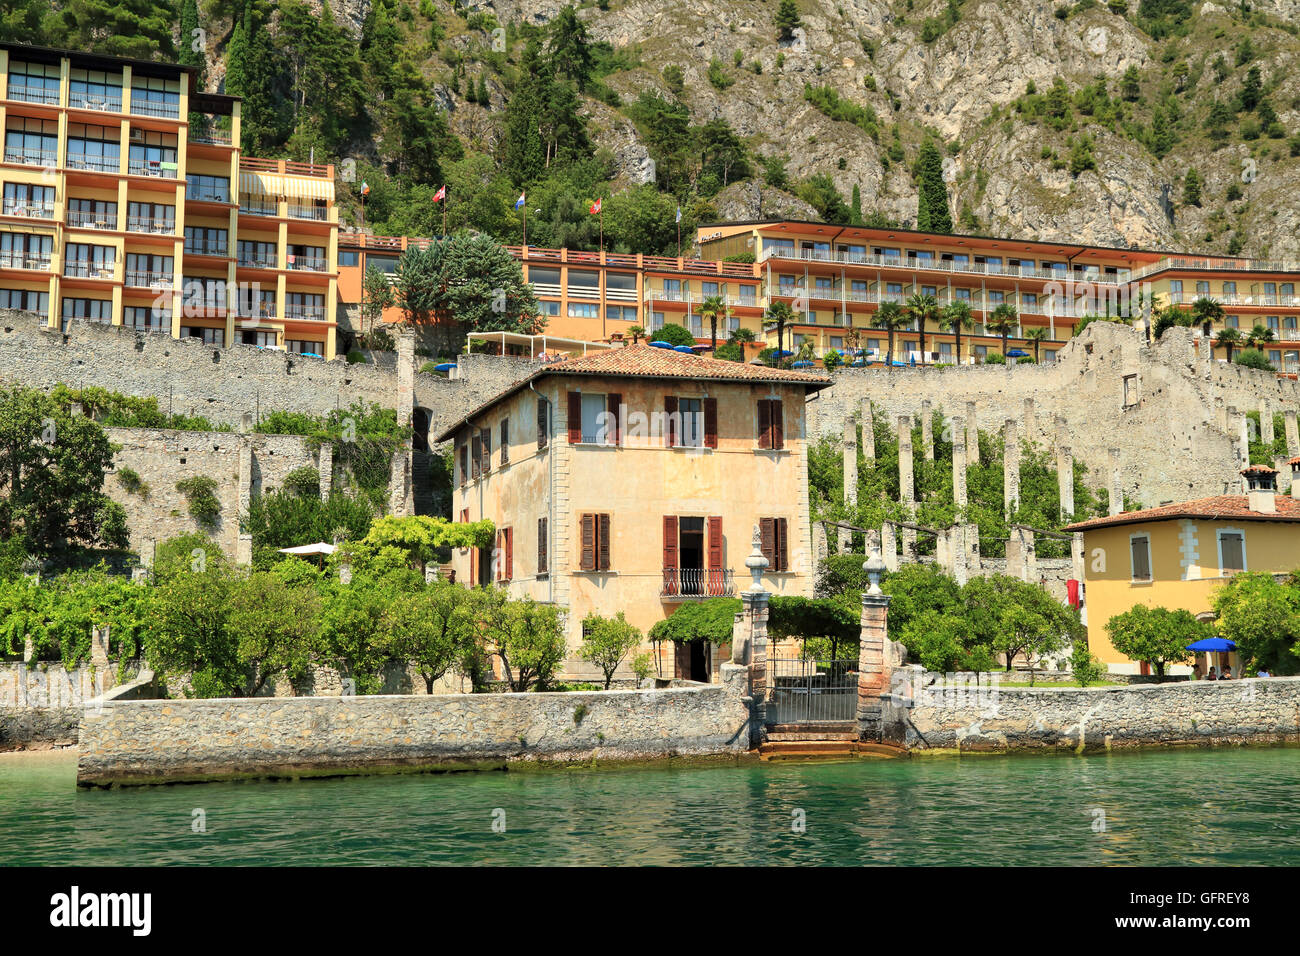 Old House with lemon garden terrace. Limone sul Garda, Lake Garda, Lago di Garda, Gardasee, Italy Stock Photo